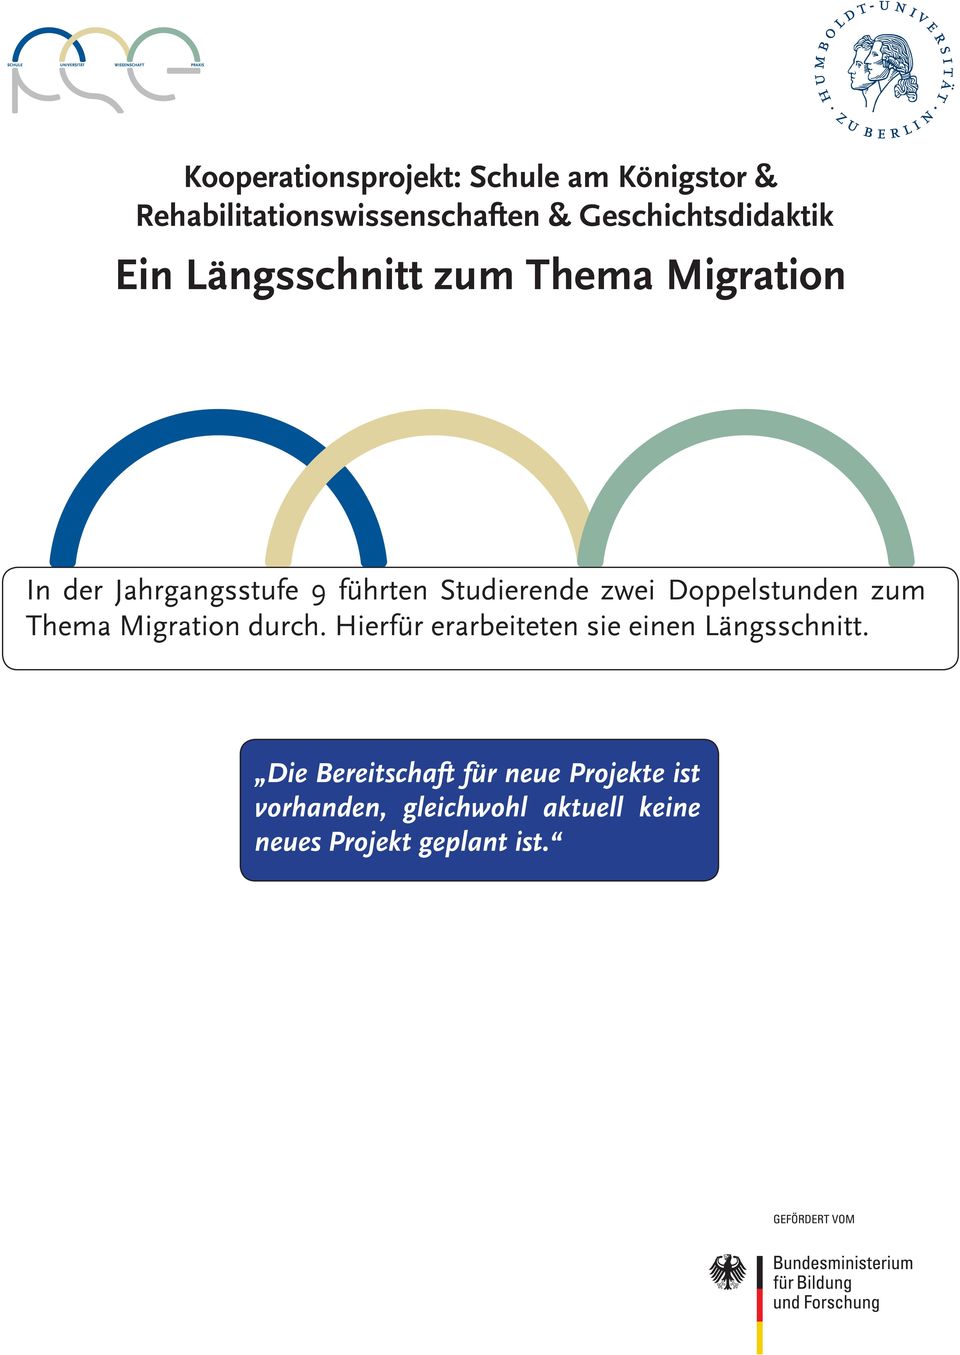 Studierende zwei Doppelstunden zum Thema Migration durch.